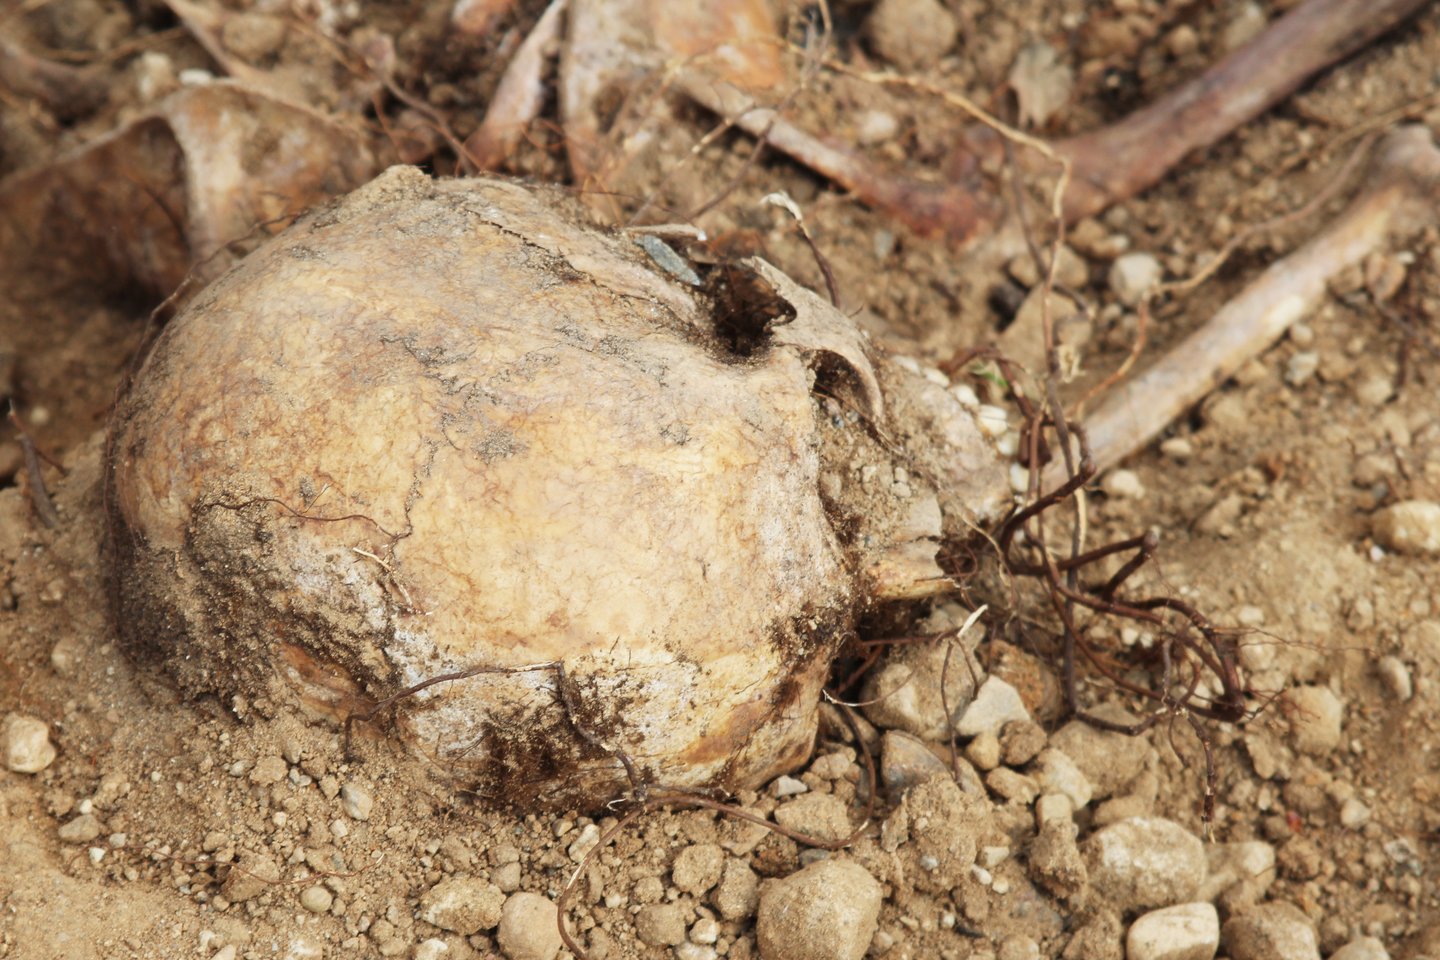 Sklypo lyginimui atvežtoje žemėje buvo rasta žmogaus kaukolė ir kitų kaulų fragmentai.<br> R.Vitkaus asociatyvi nuotrauka